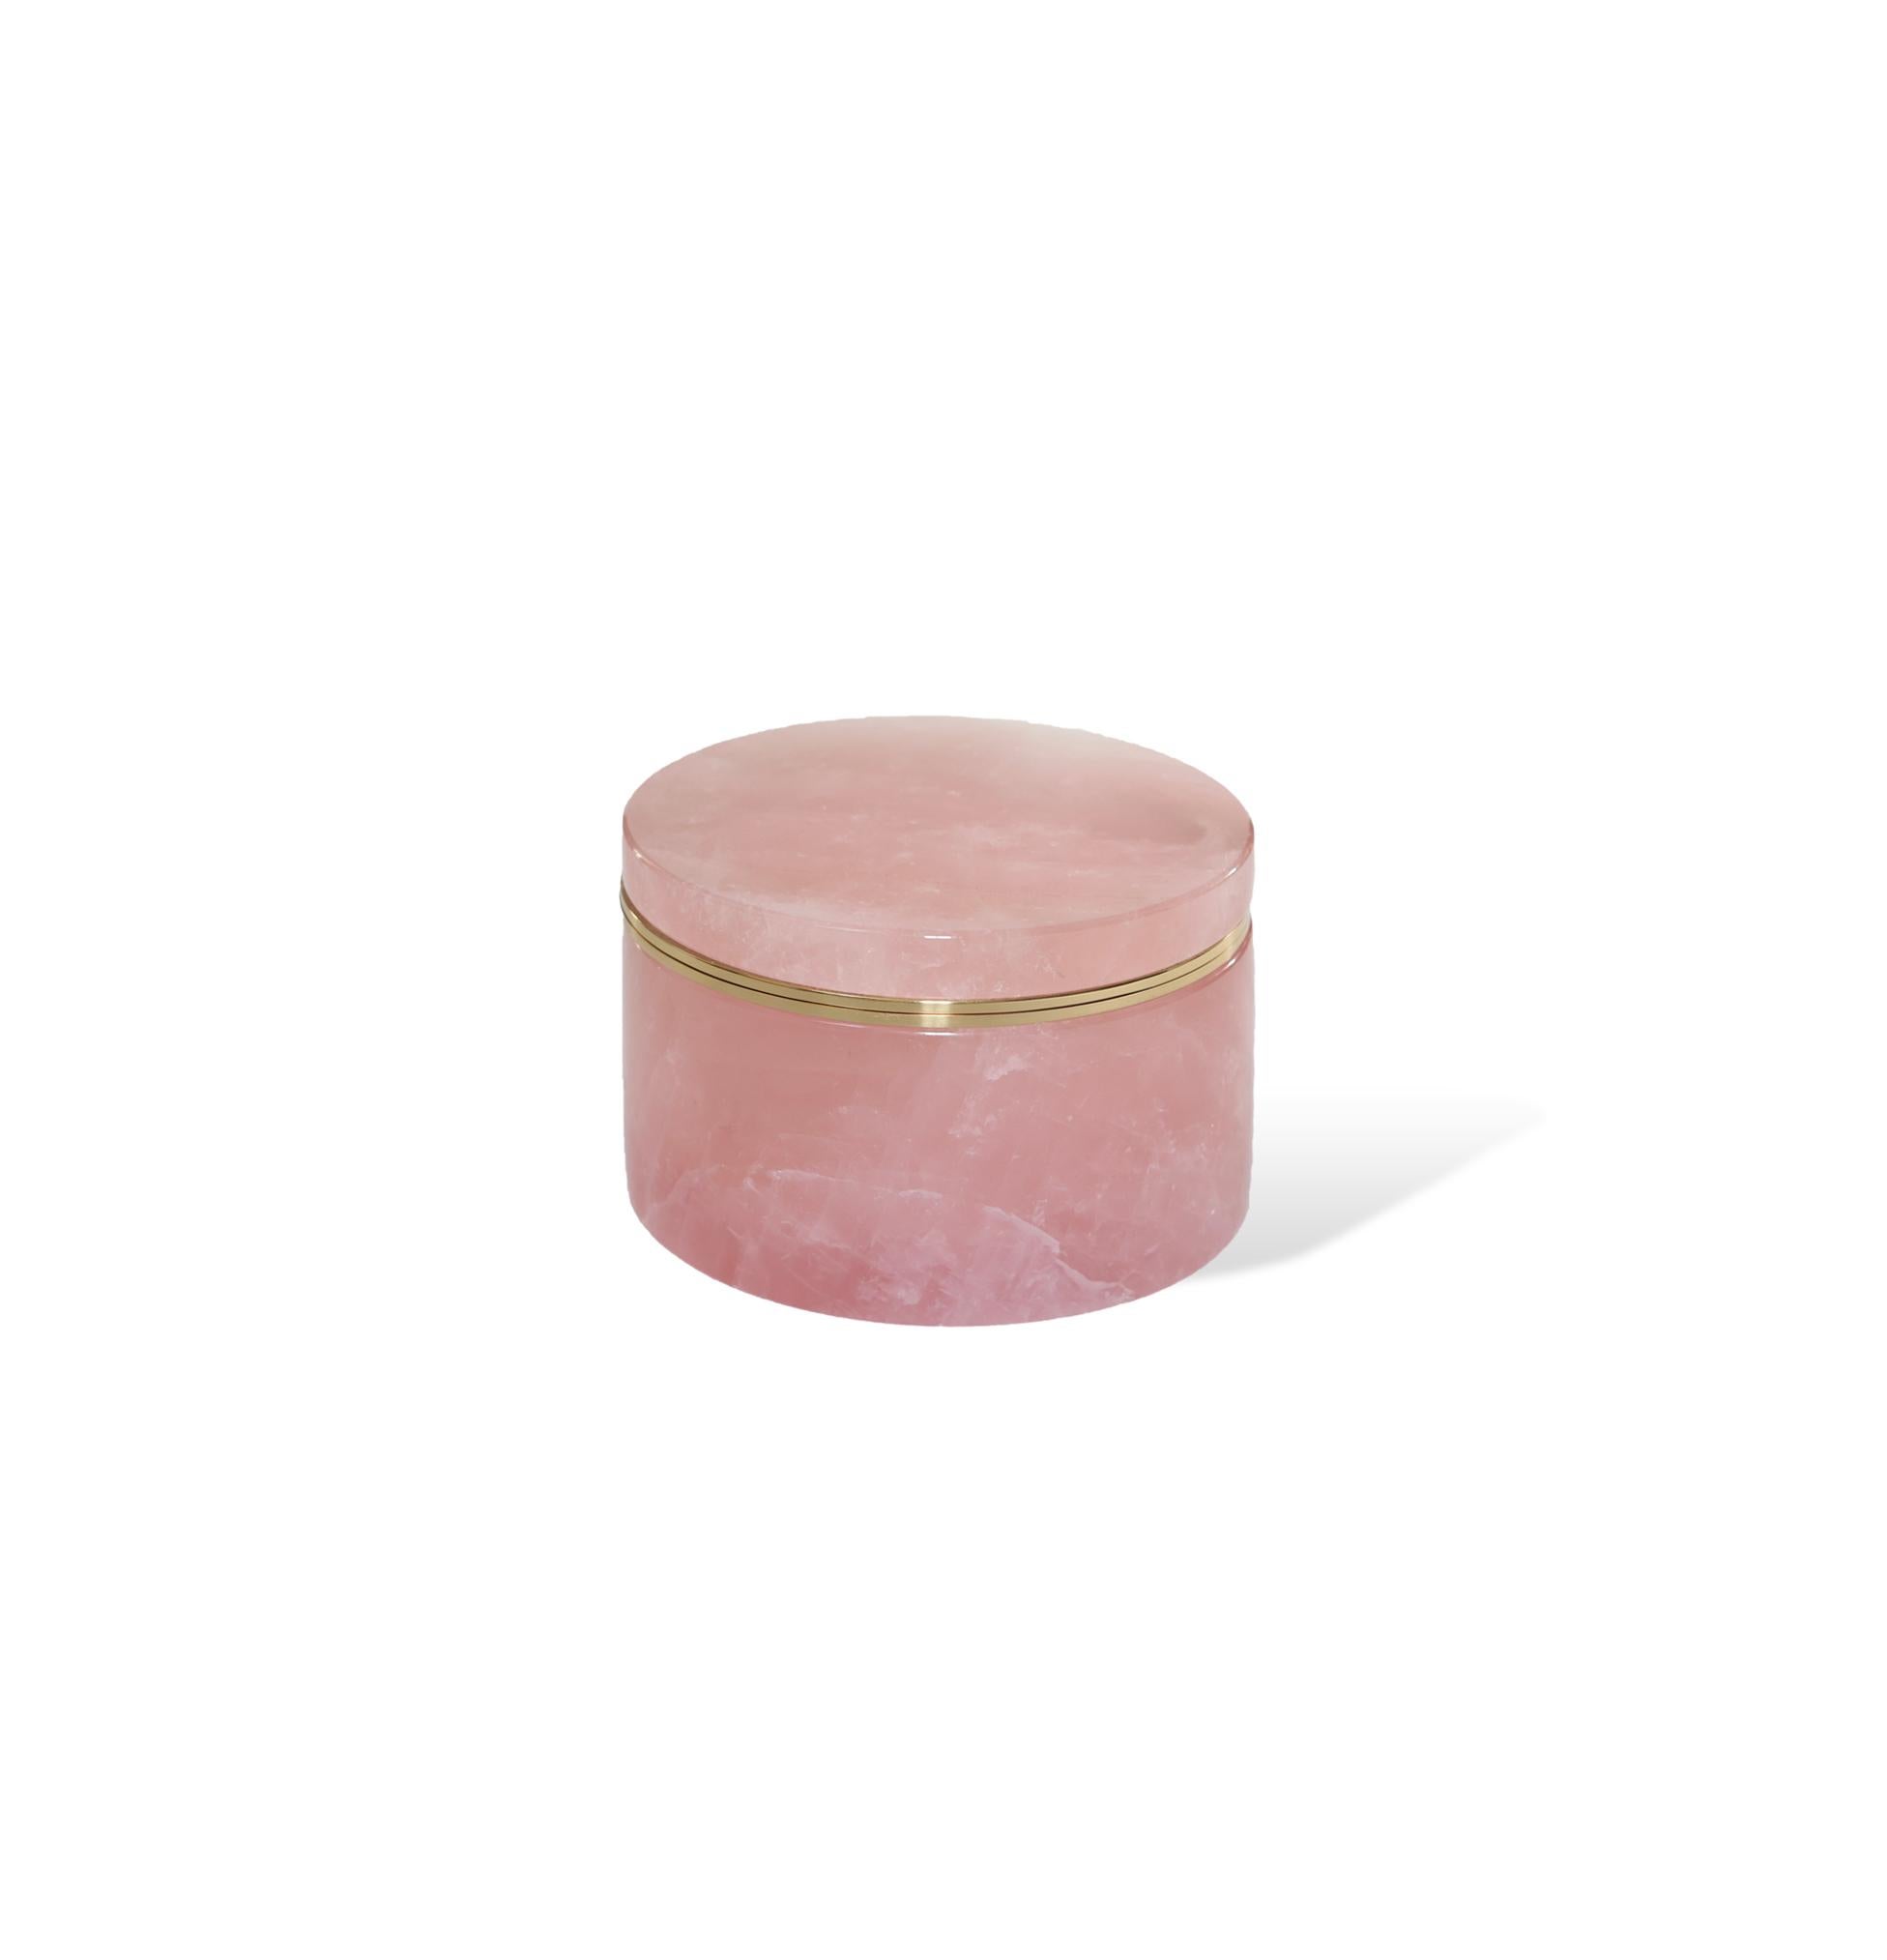 Fein geschnitzte Dose aus rosa Bergkristall mit Deckel, poliertes Messingdekor. Erstellt von Phoenix NYC.
Kundenspezifische Größe und Ausführung auf Anfrage.
   